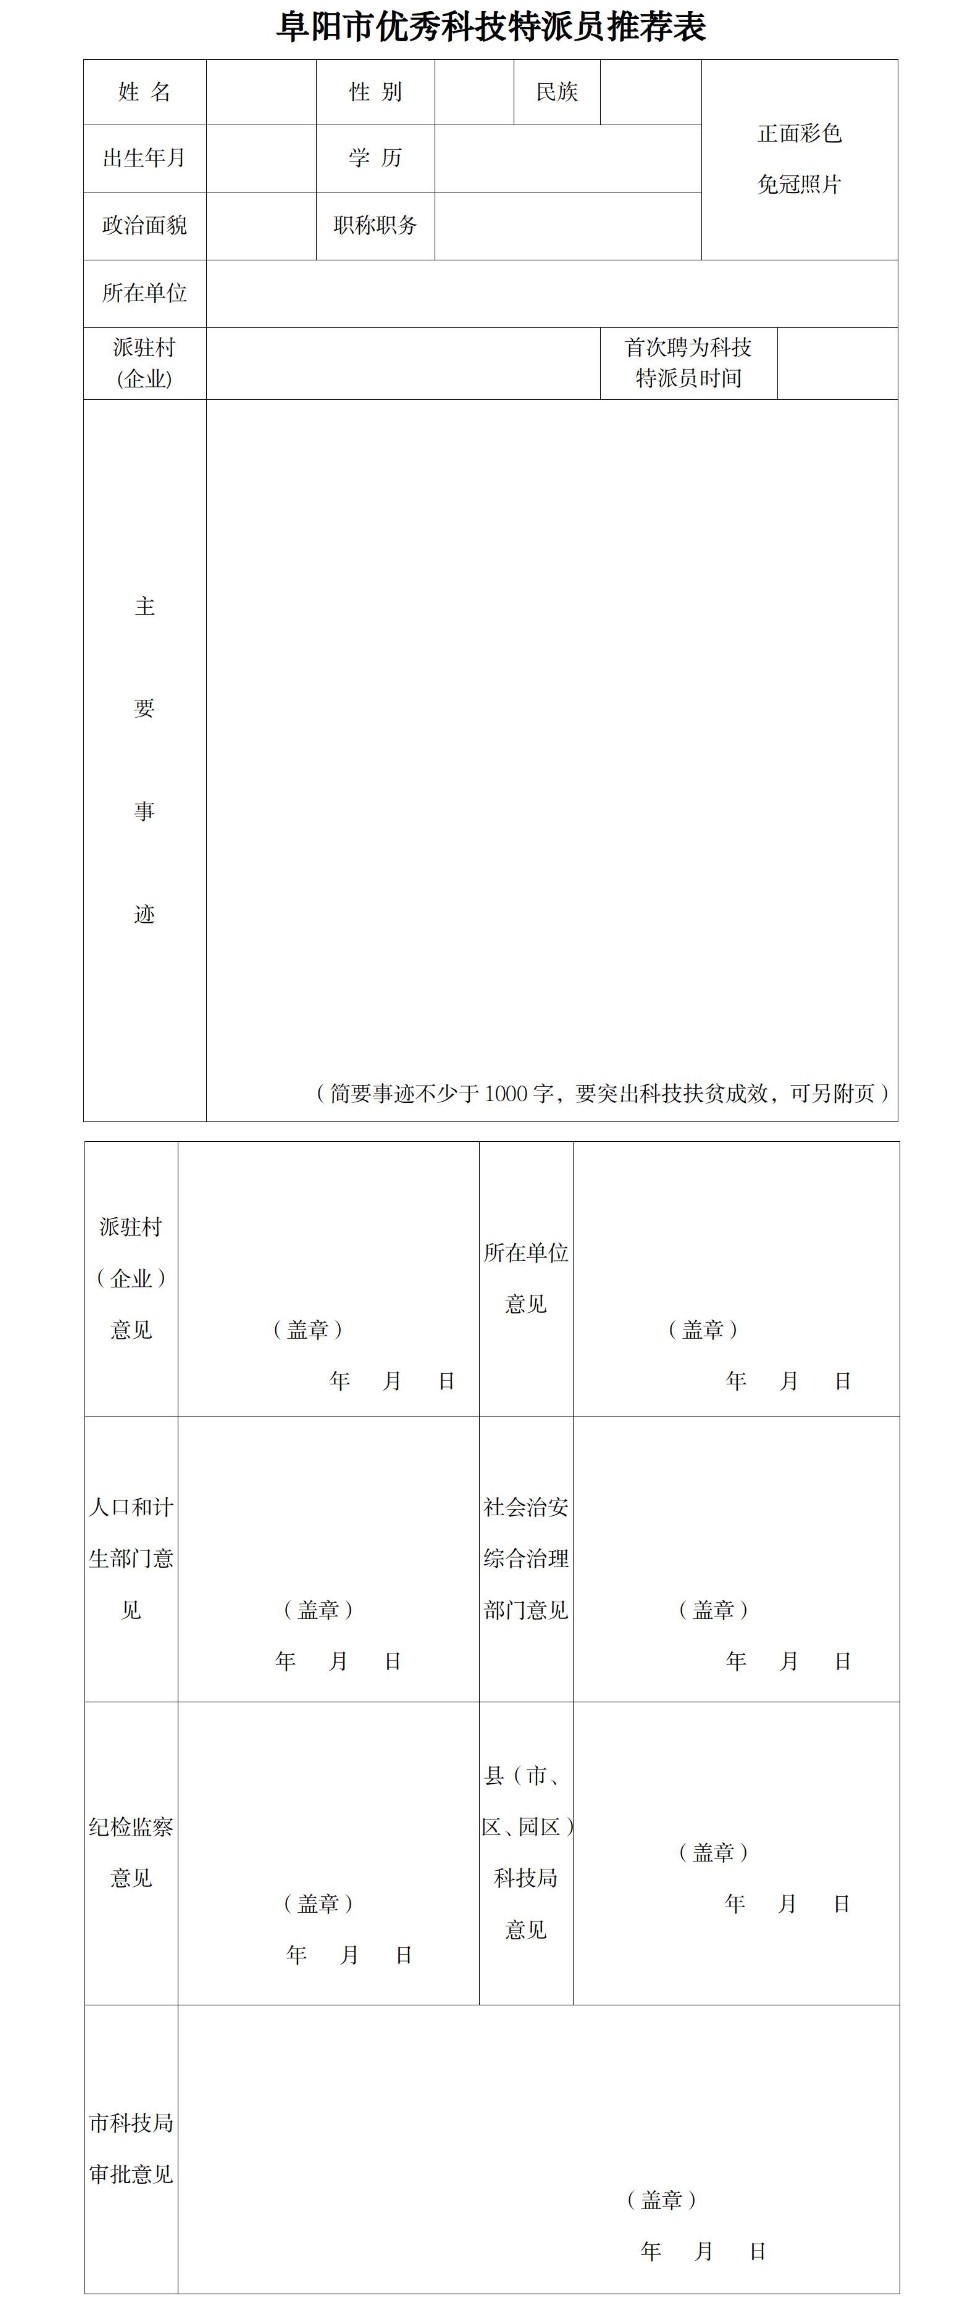 阜阳市优秀科技特派员推荐表.jpg